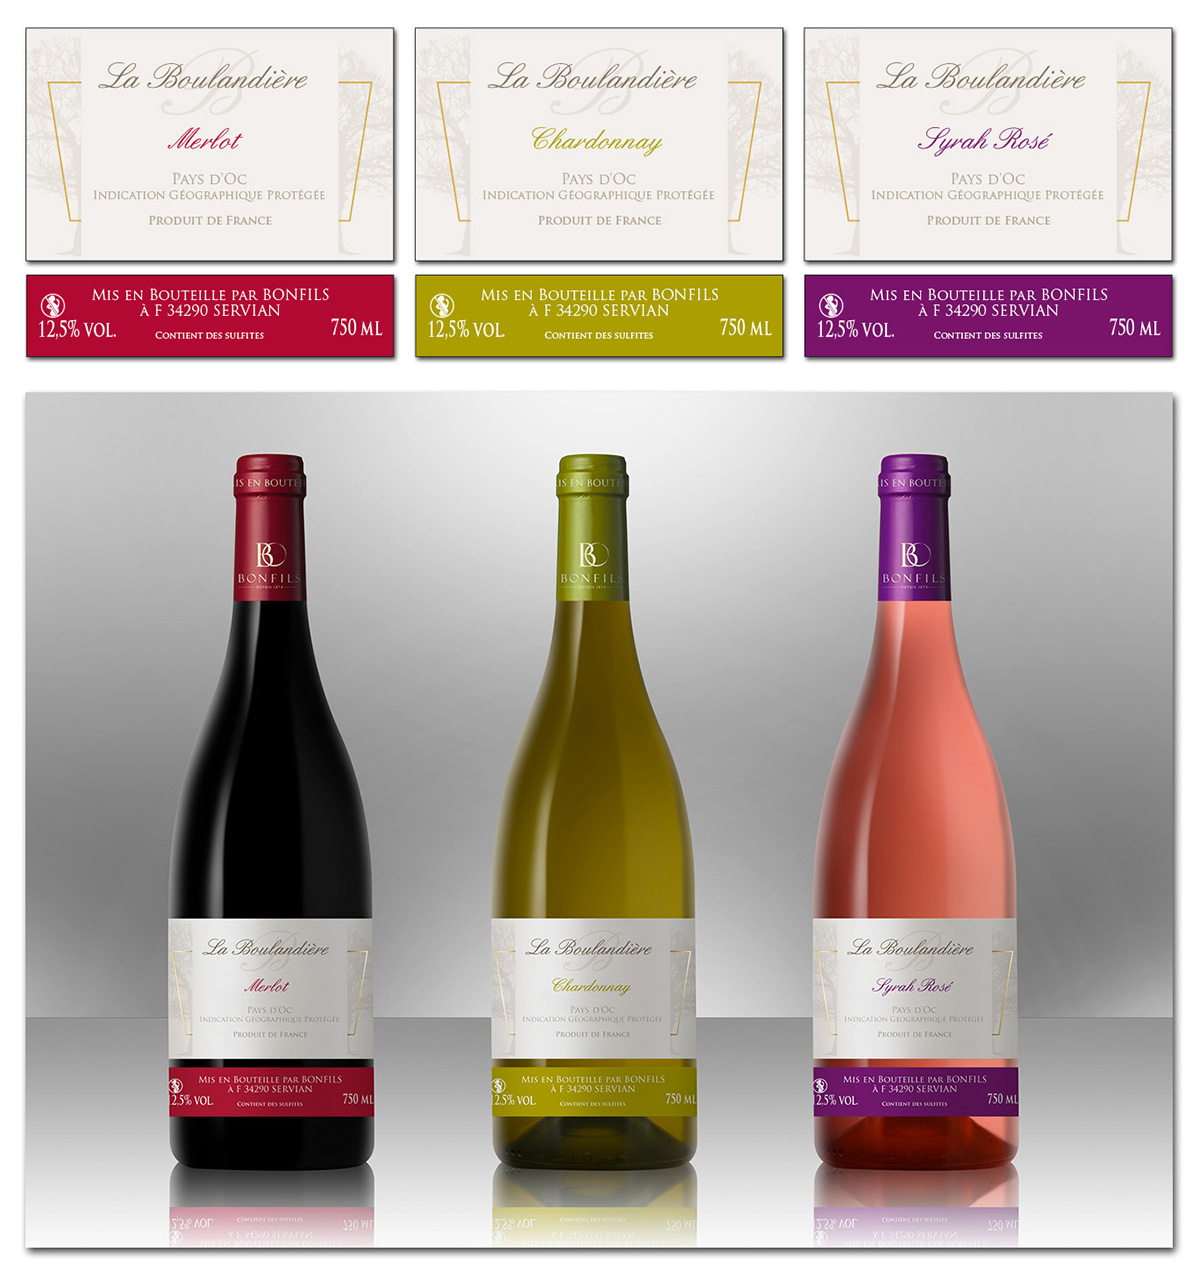 Etiquettes de Vin - La Boulandire